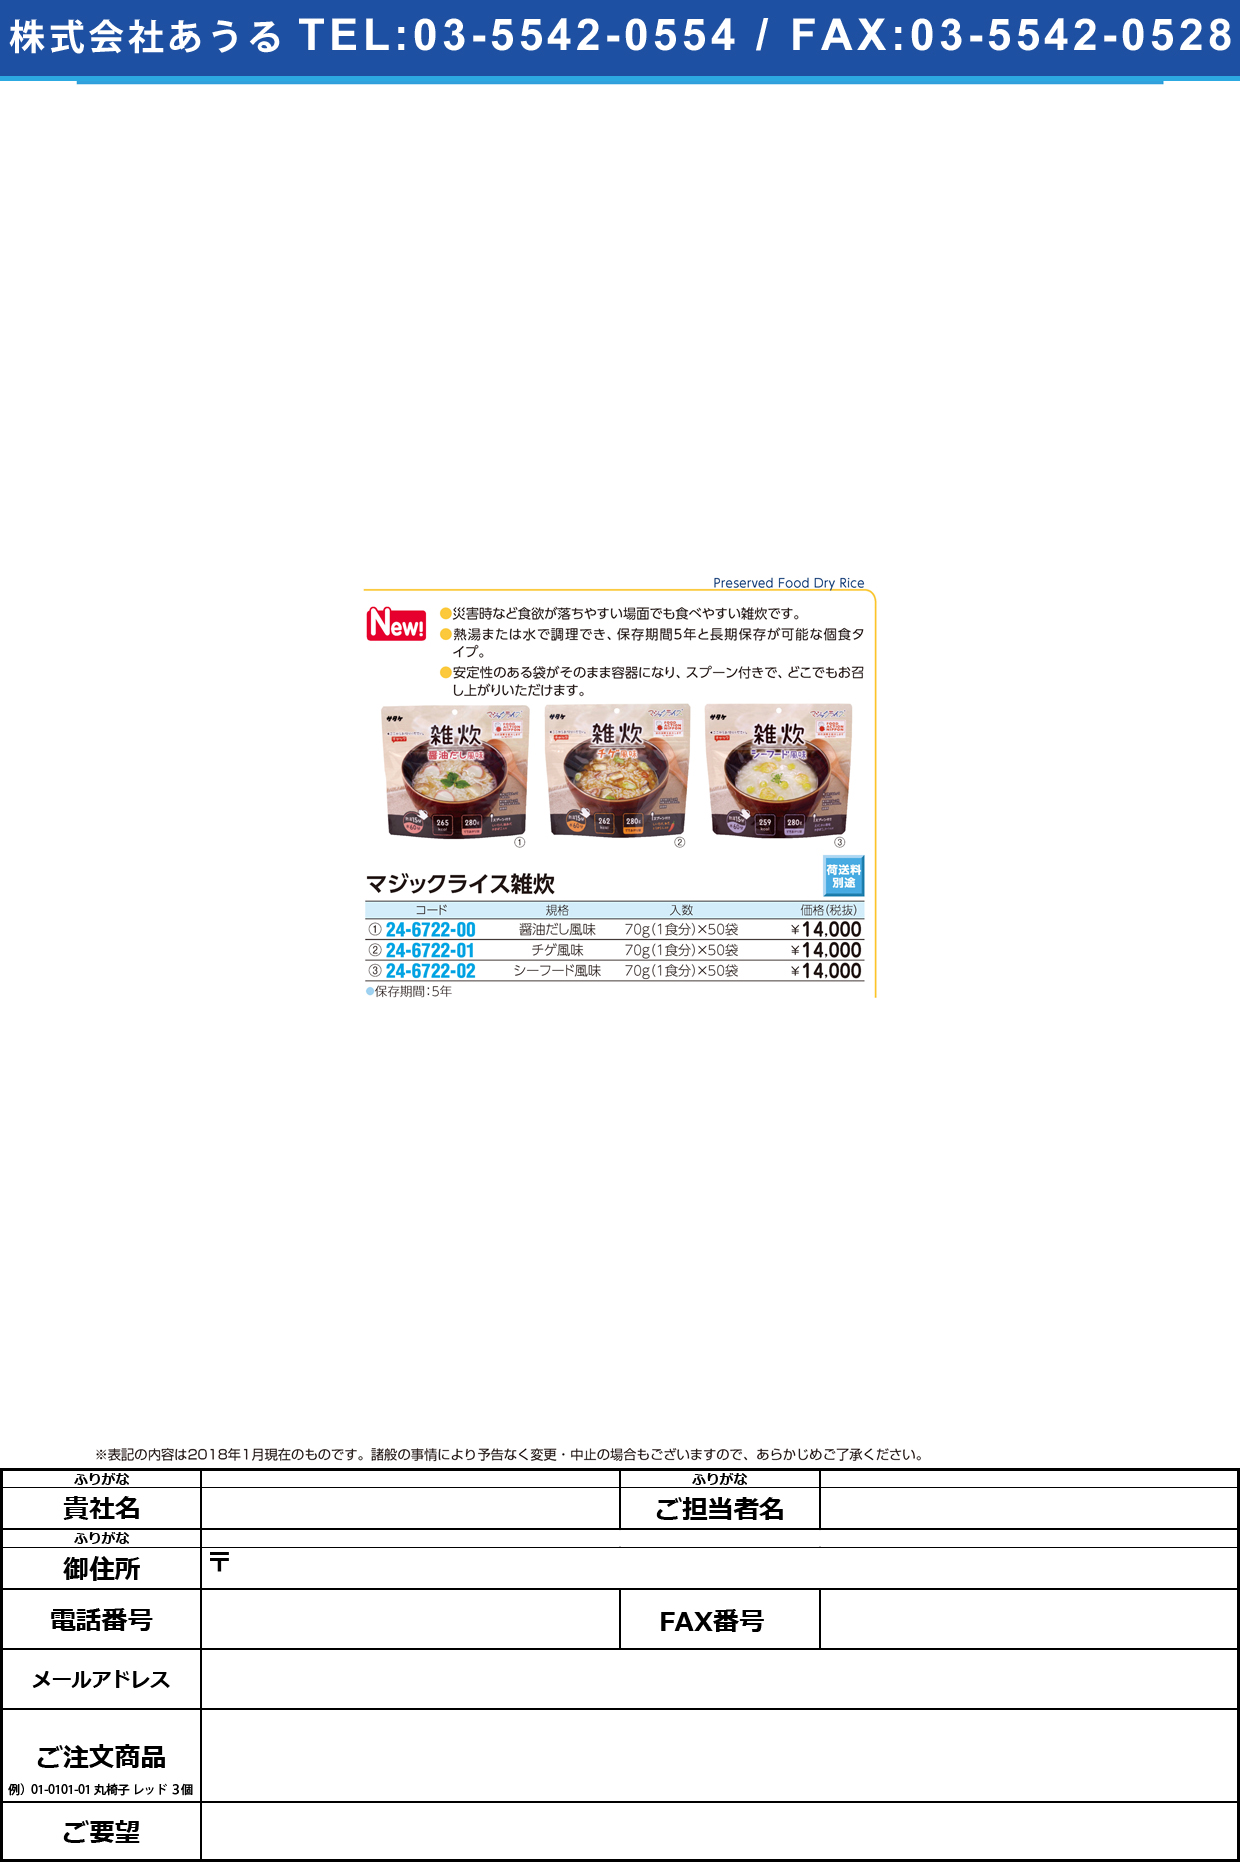 (24-6722-02)マジックライス雑炊シーフード風味 (70G･1ｼｮｸ)50ﾌｸﾛ ﾏｼﾞｯｸﾗｲｽｿﾞｳｽｲ【1箱単位】【2018年カタログ商品】